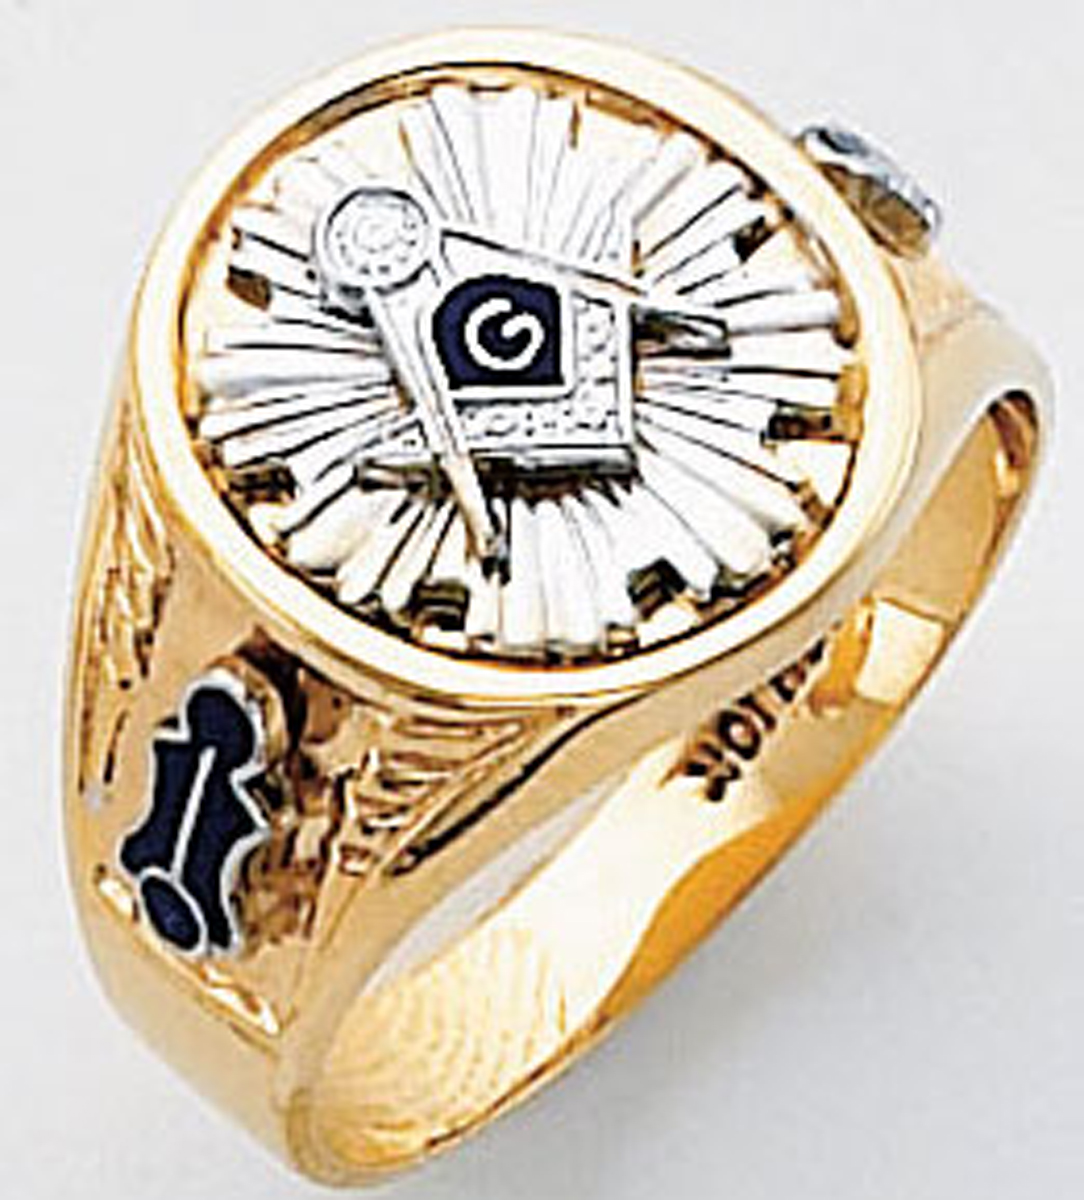 Gold Masonic Ring Solid Back 3348SBL